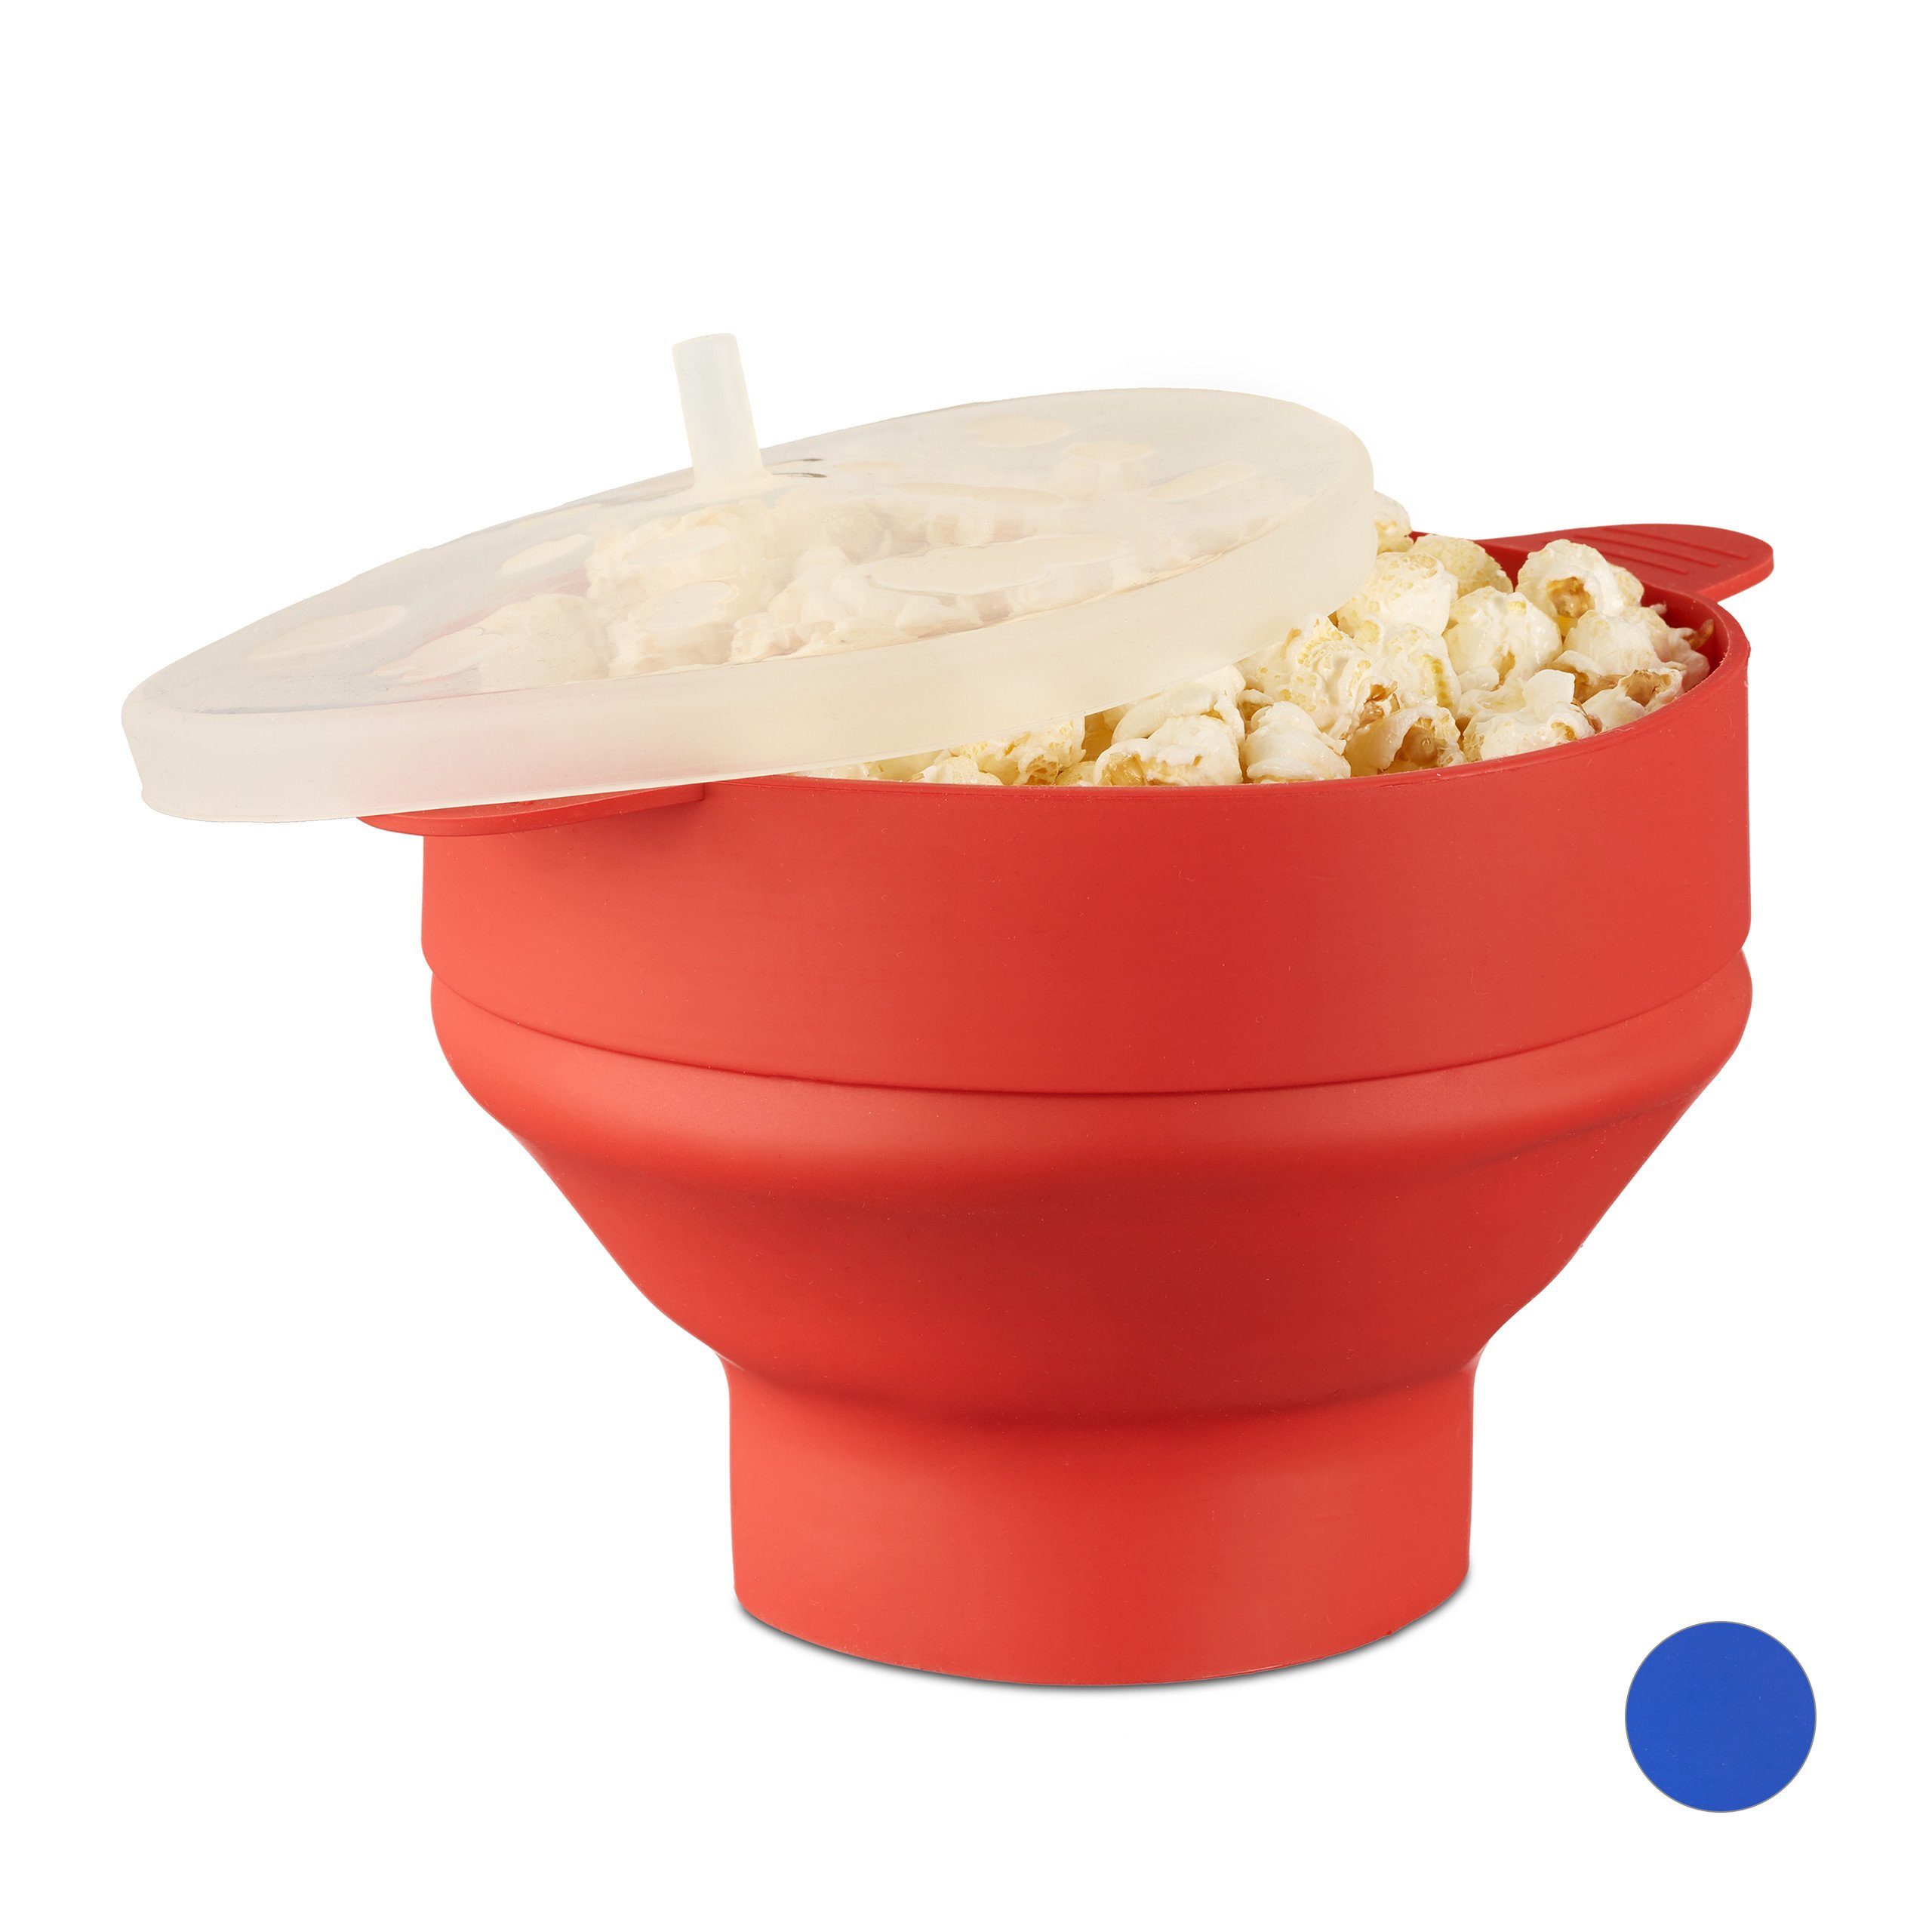 Günstig und beliebt relaxdays Popcorn-Pfanne 1 Mikrowelle rot Popcorn Silikon Maker x